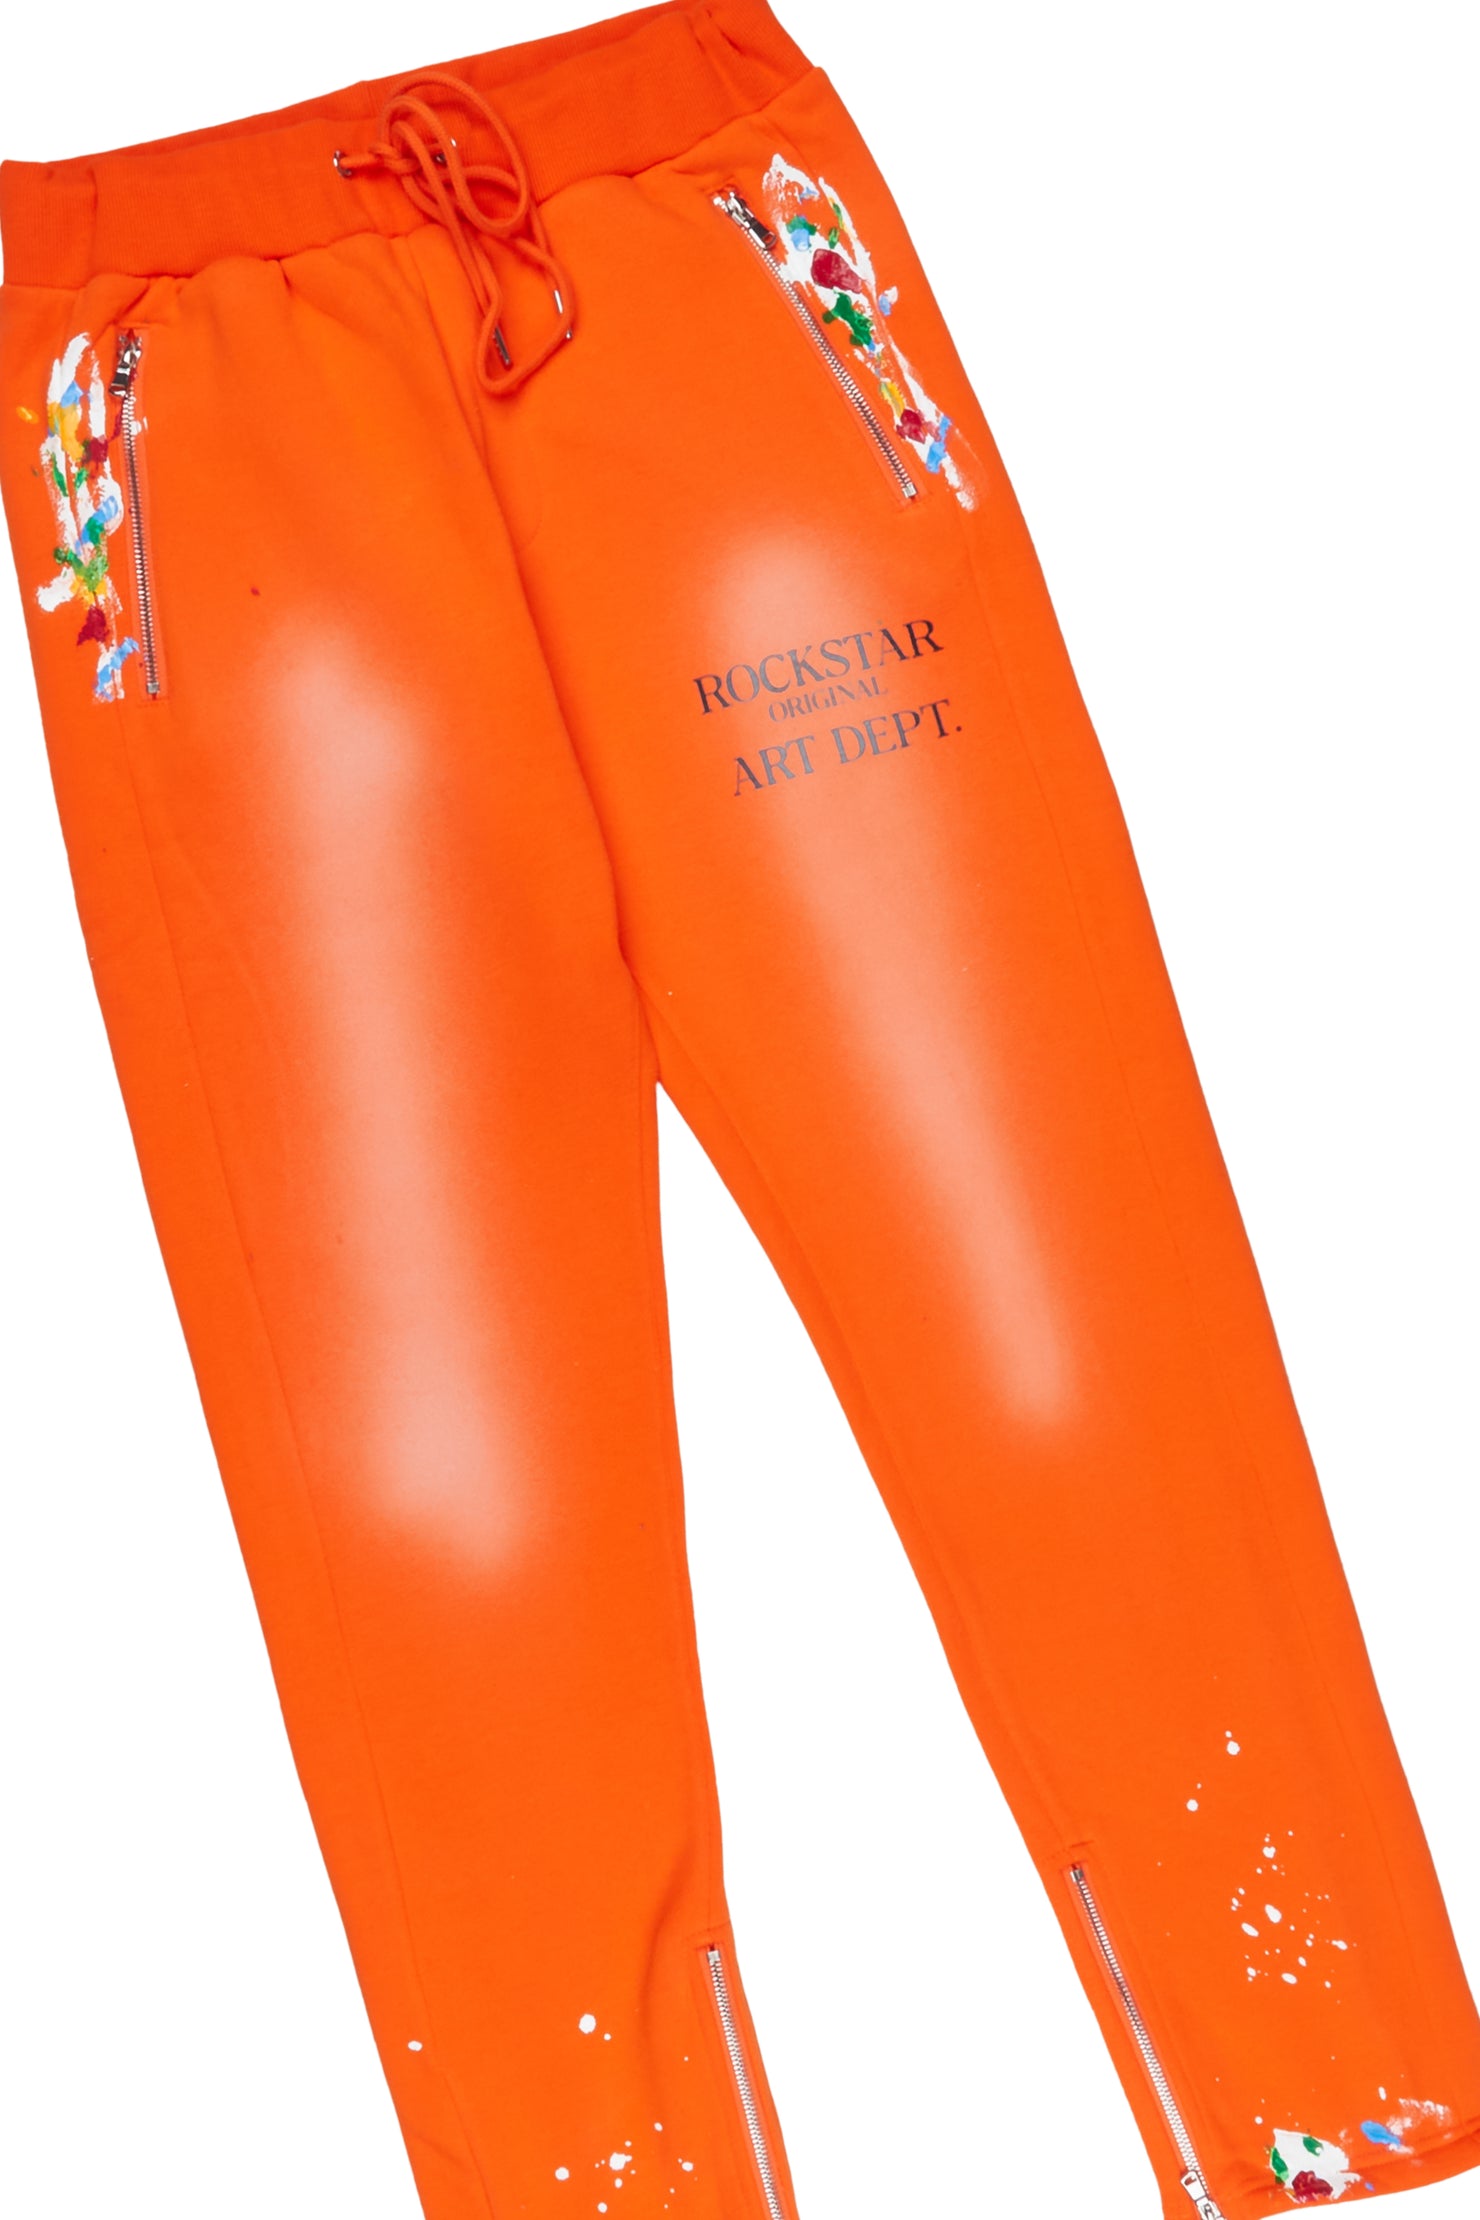 Rockstar Art Dist. Orange Hoodie Slim Fit Pant Set